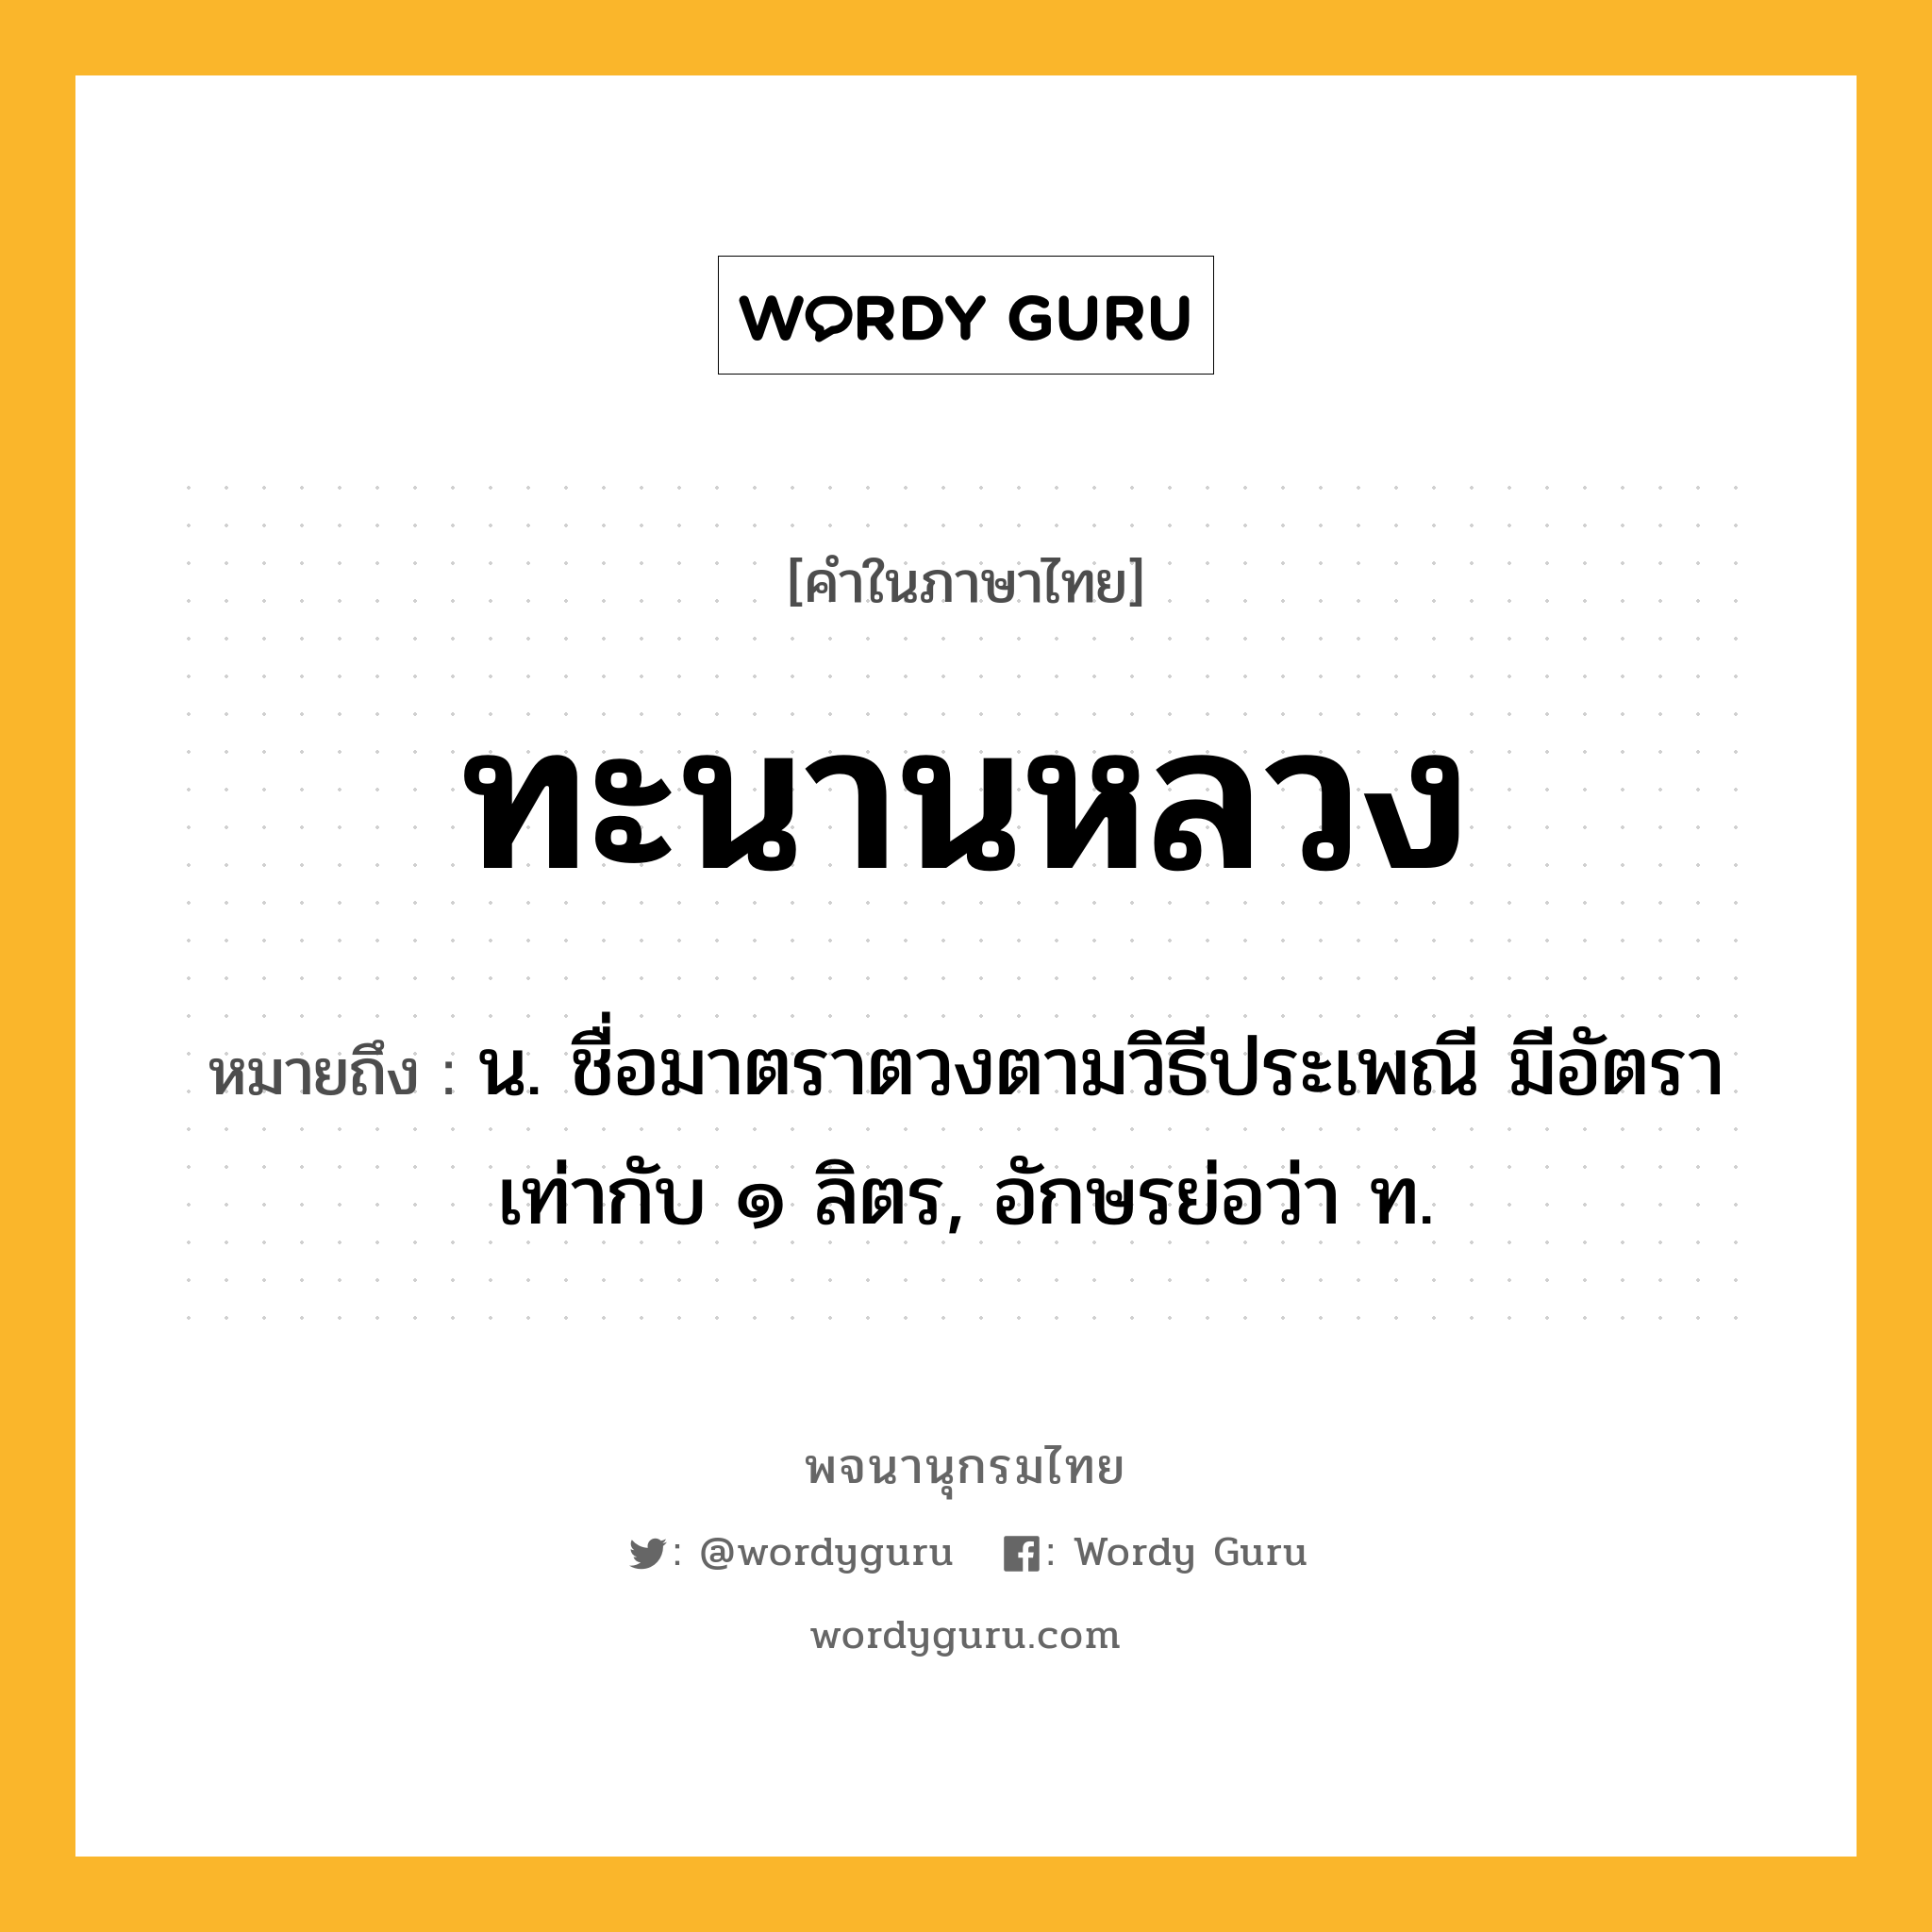 ทะนานหลวง ความหมาย หมายถึงอะไร?, คำในภาษาไทย ทะนานหลวง หมายถึง น. ชื่อมาตราตวงตามวิธีประเพณี มีอัตราเท่ากับ ๑ ลิตร, อักษรย่อว่า ท.